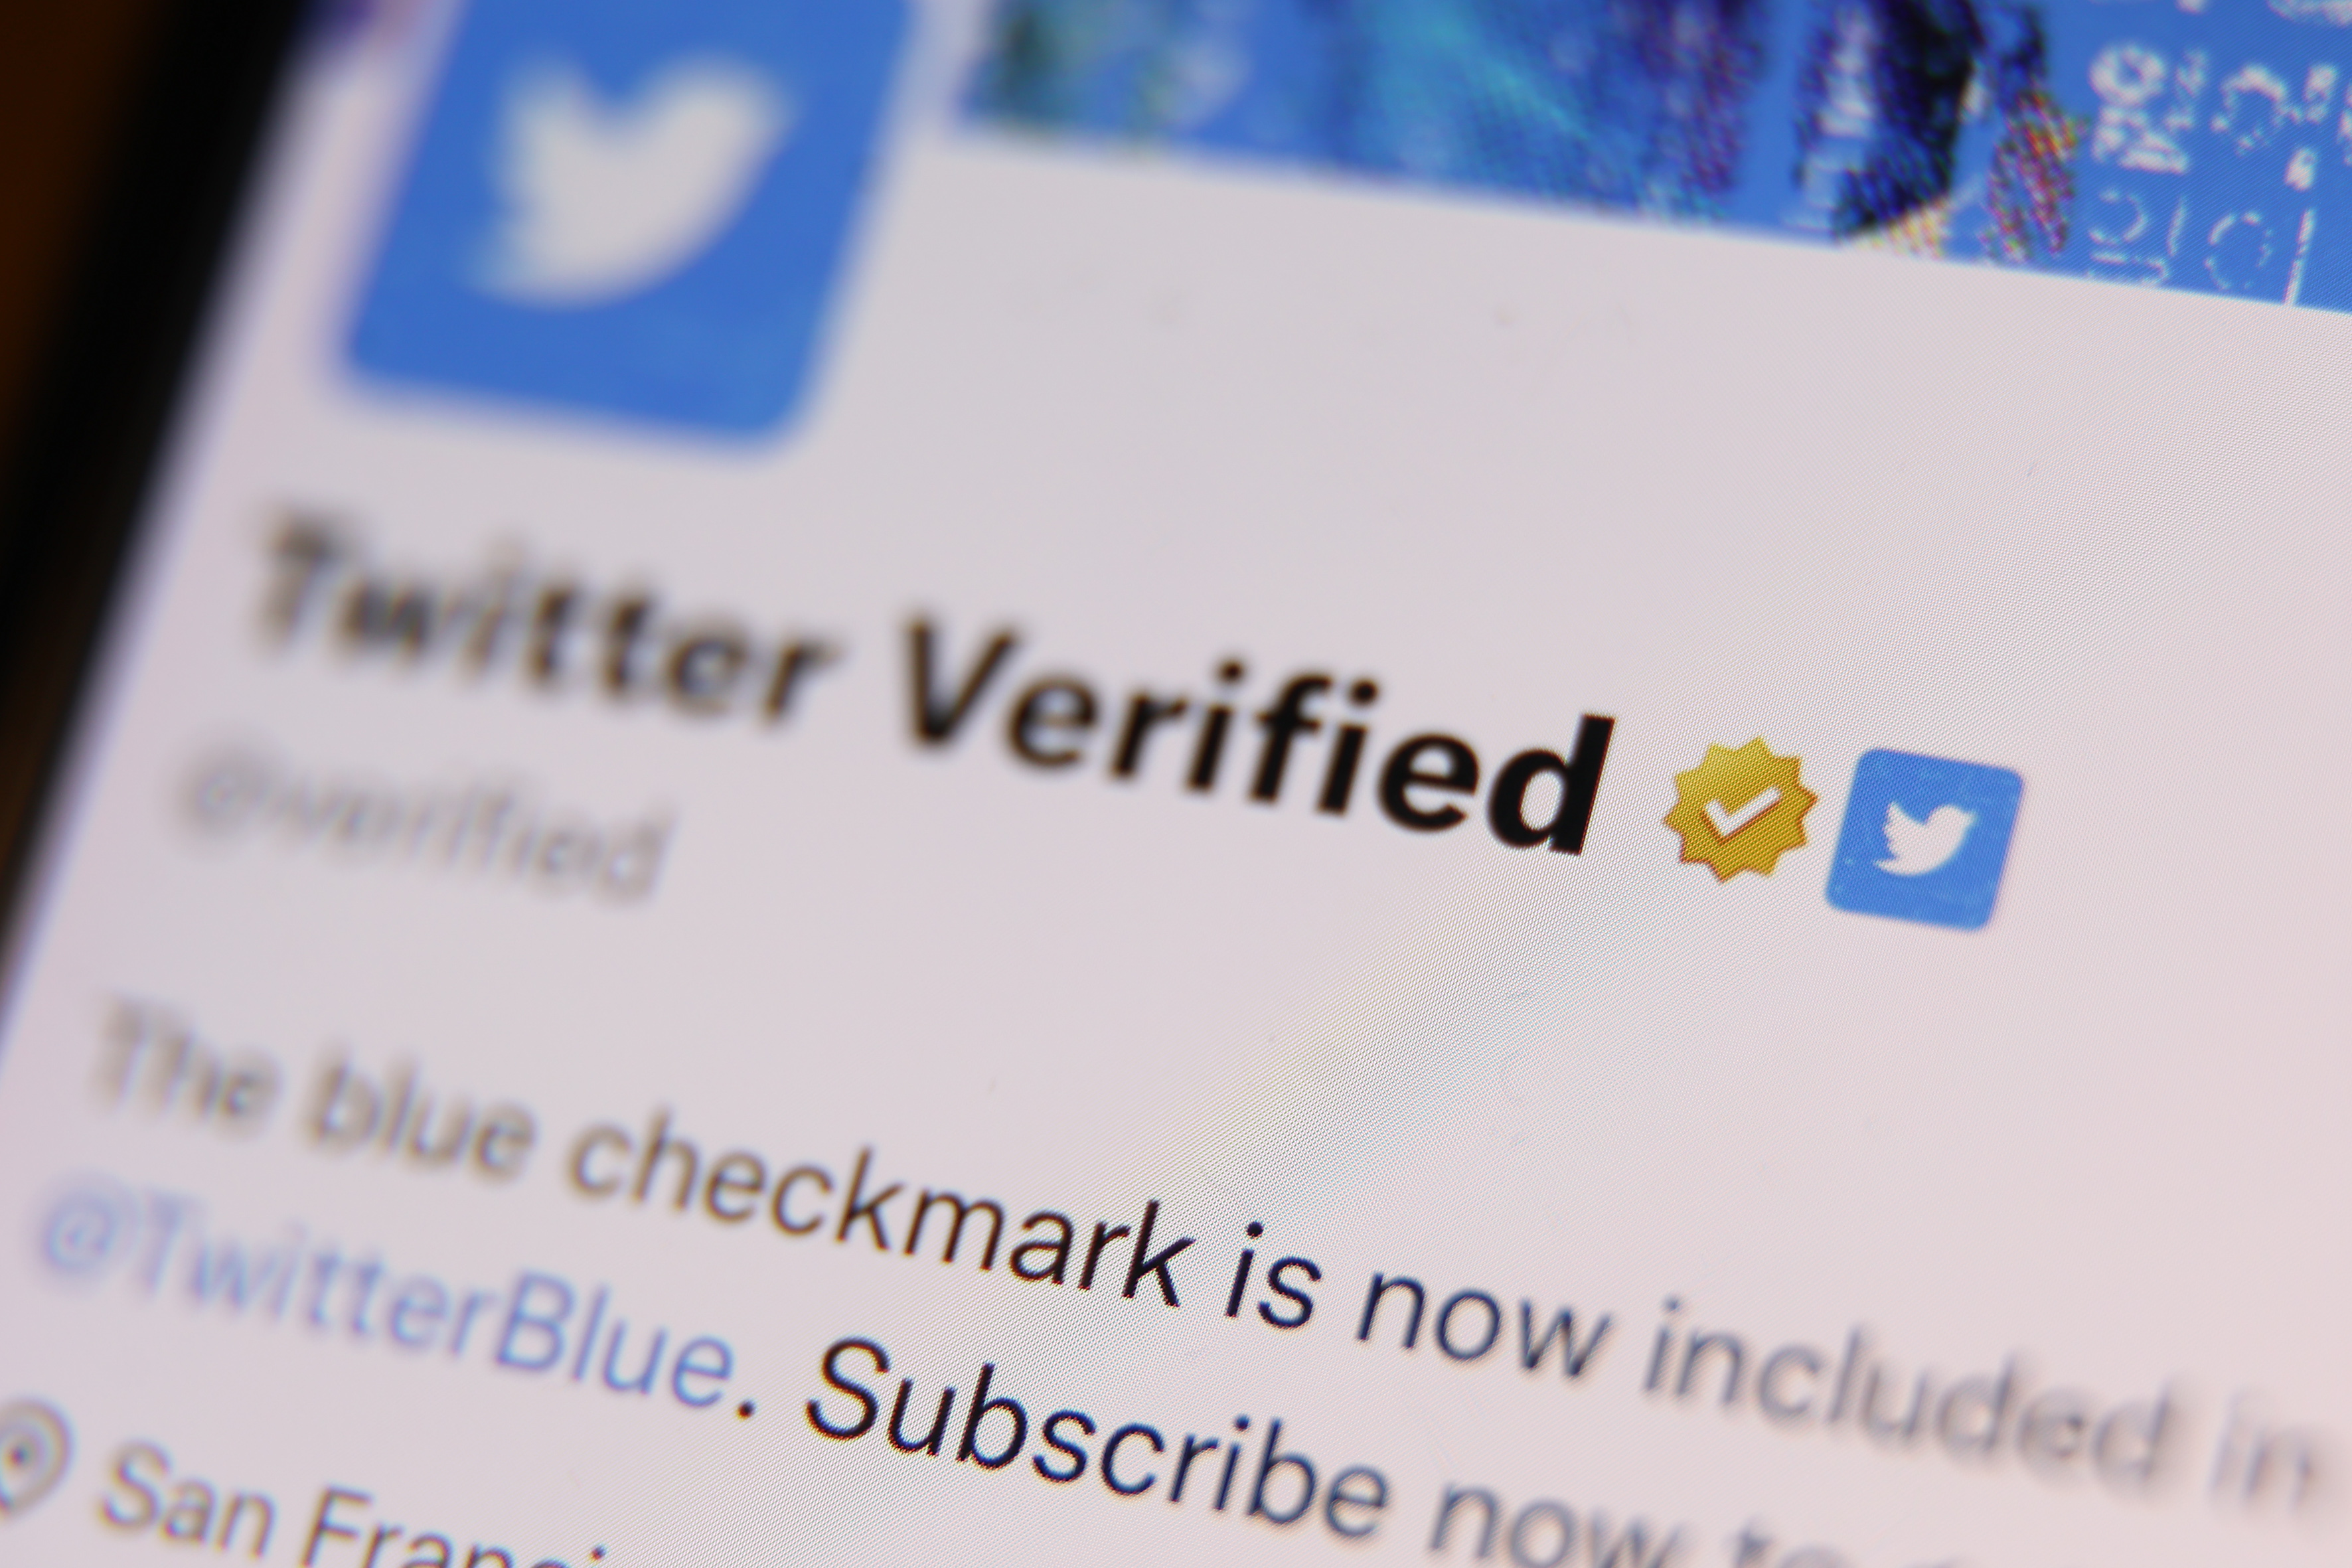 Si vous voulez une certification sur Twitter, vous devrez payer